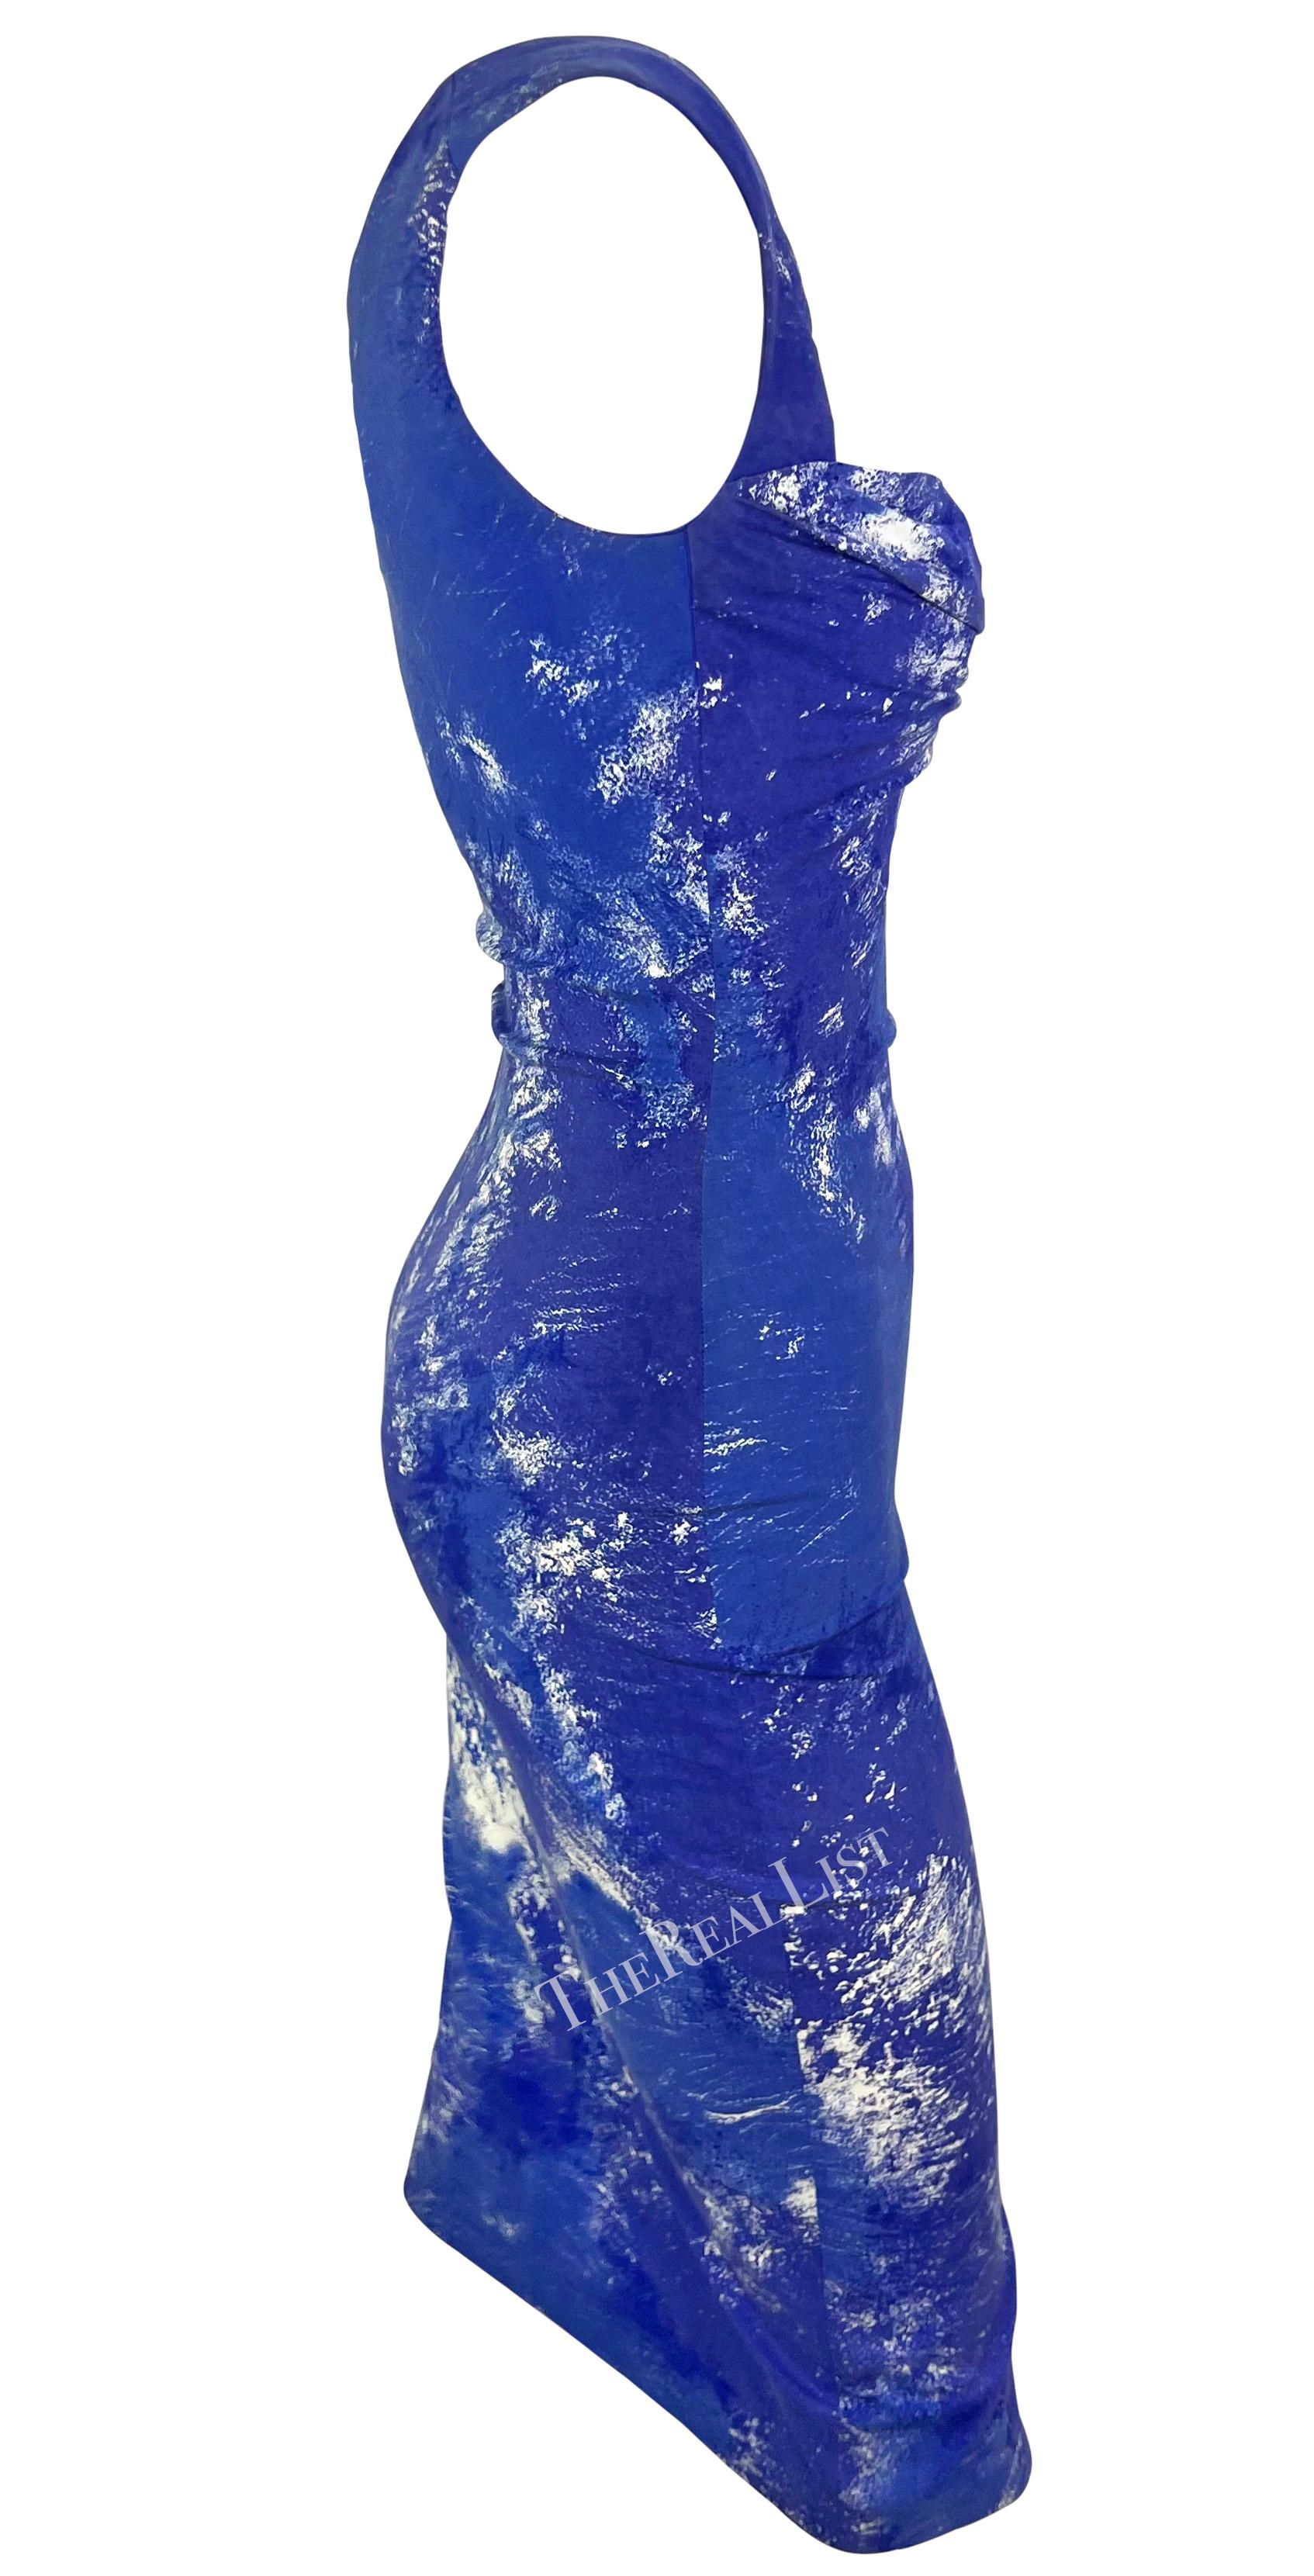 S/S 1999 Vivienne Westwood 'La Belle Hélène' Runway Corseted Blue White Dress For Sale 4